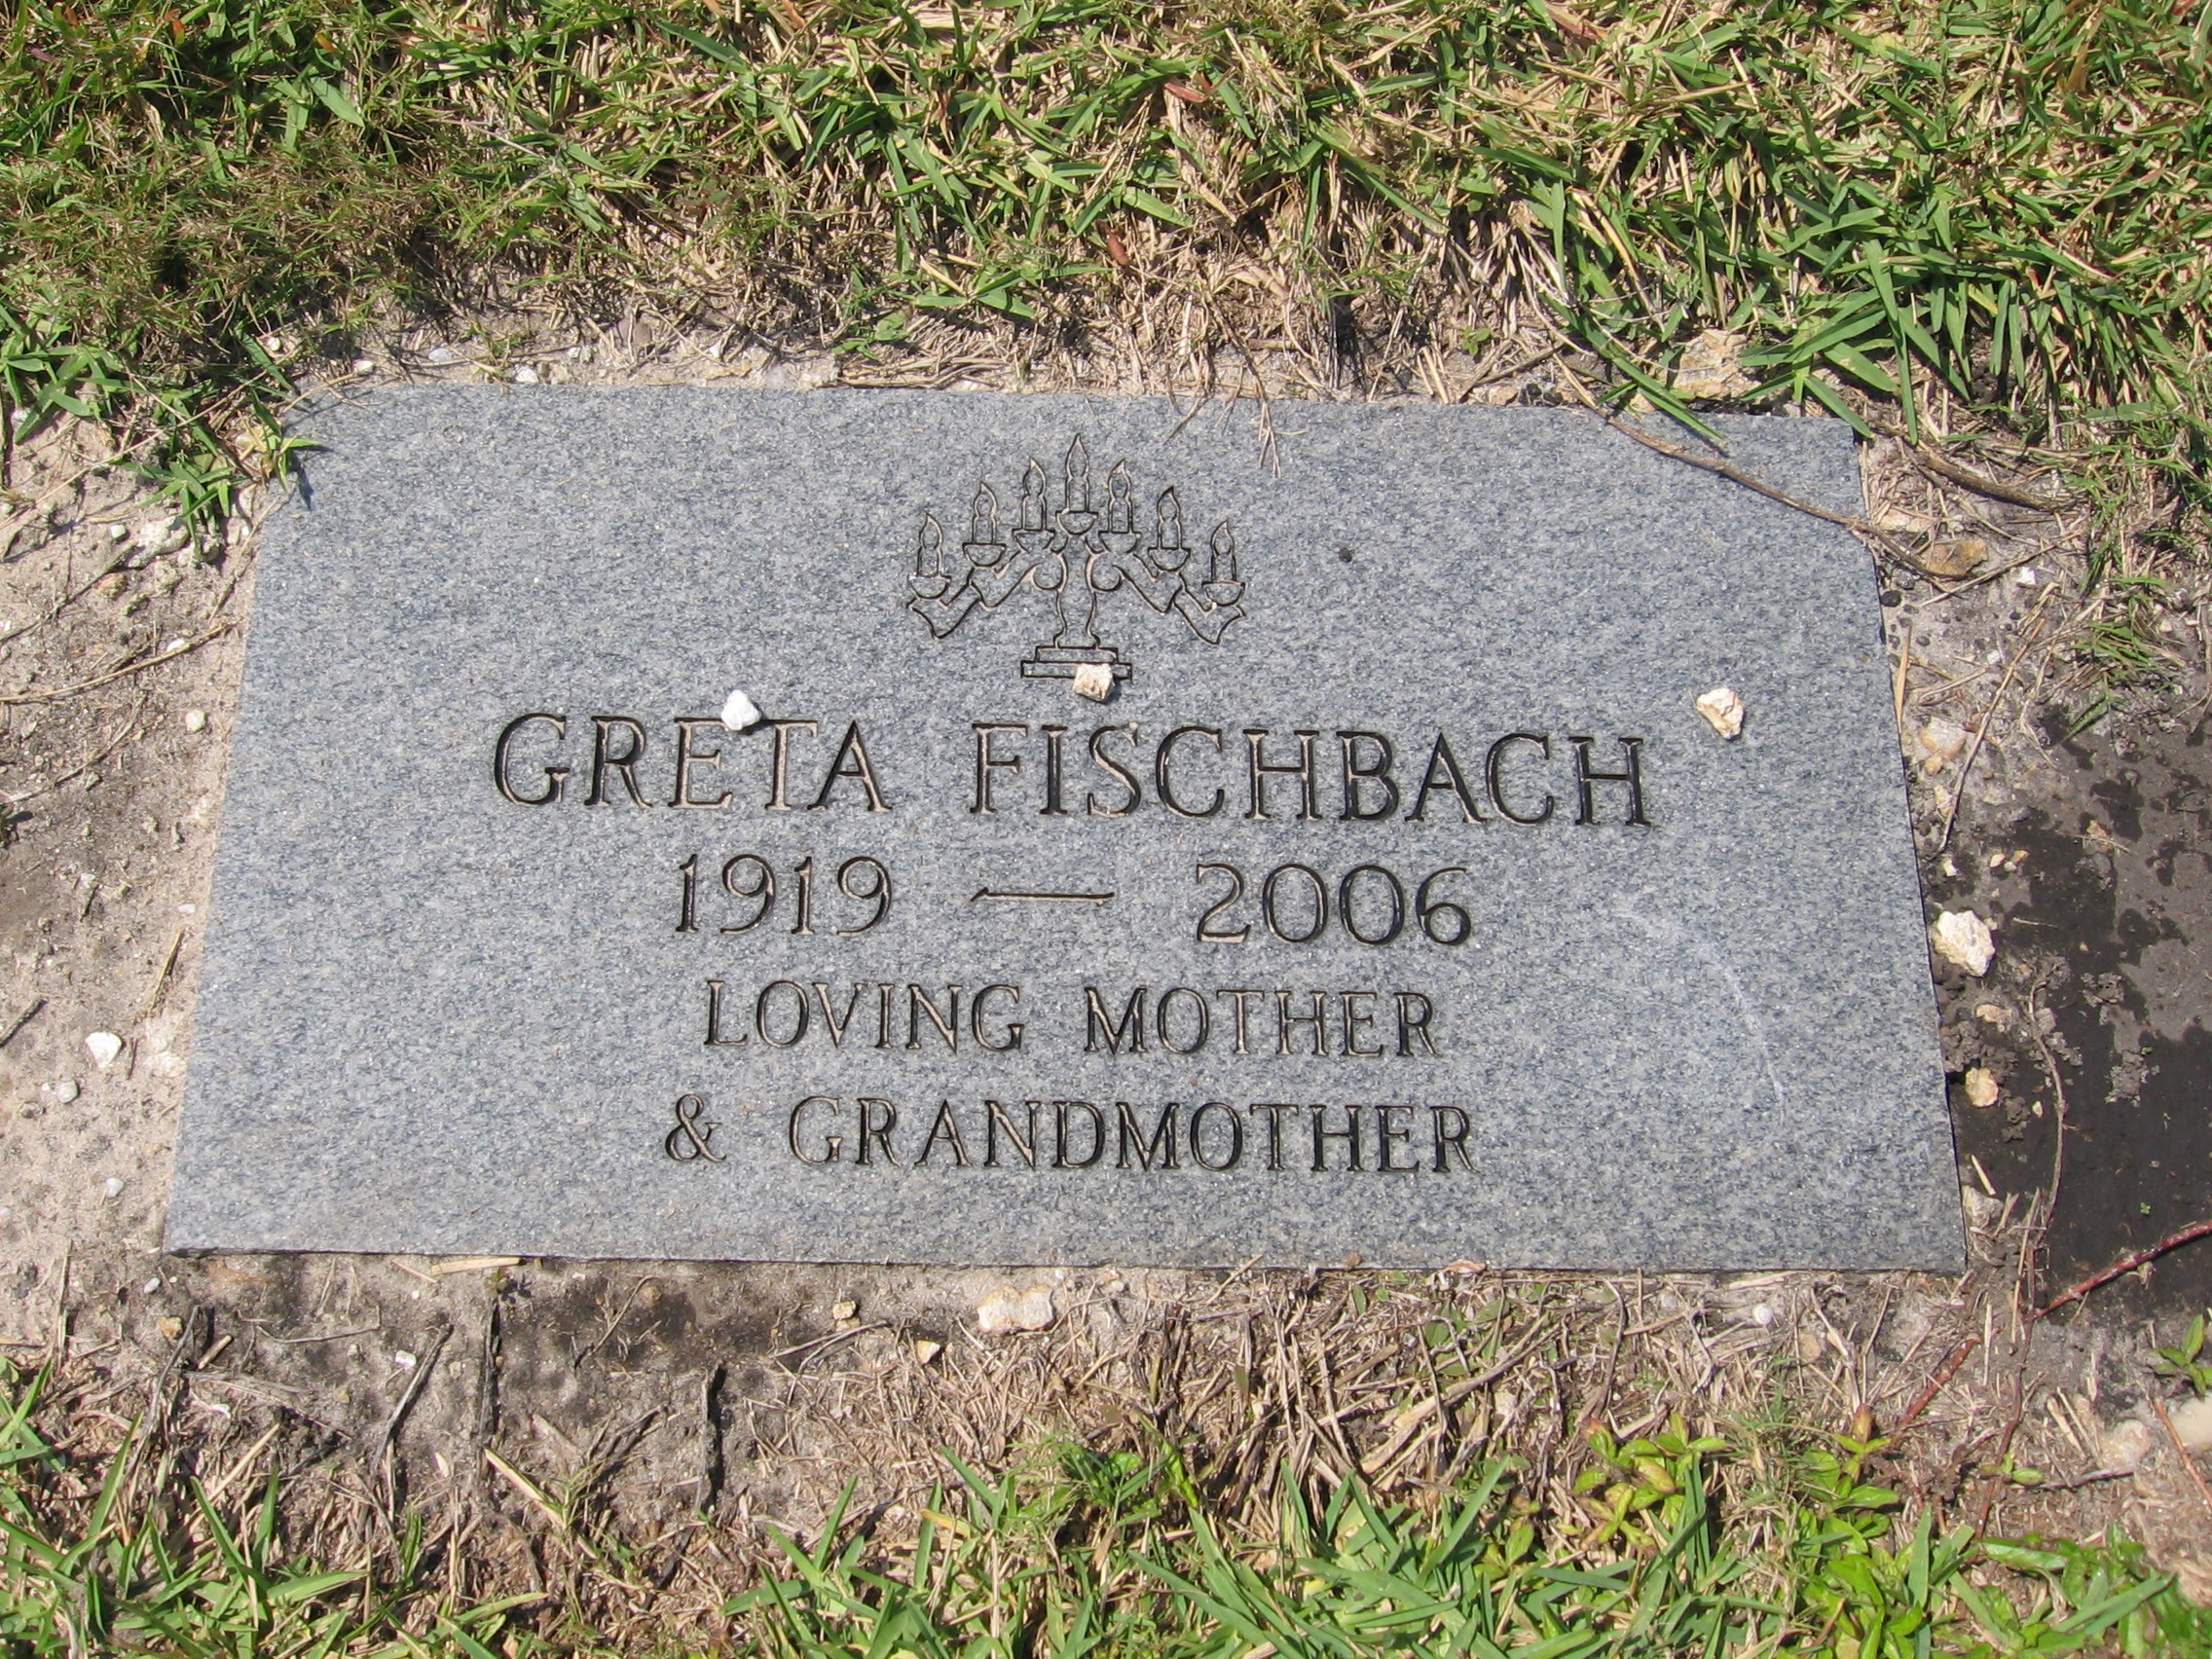 Greta Fischbach